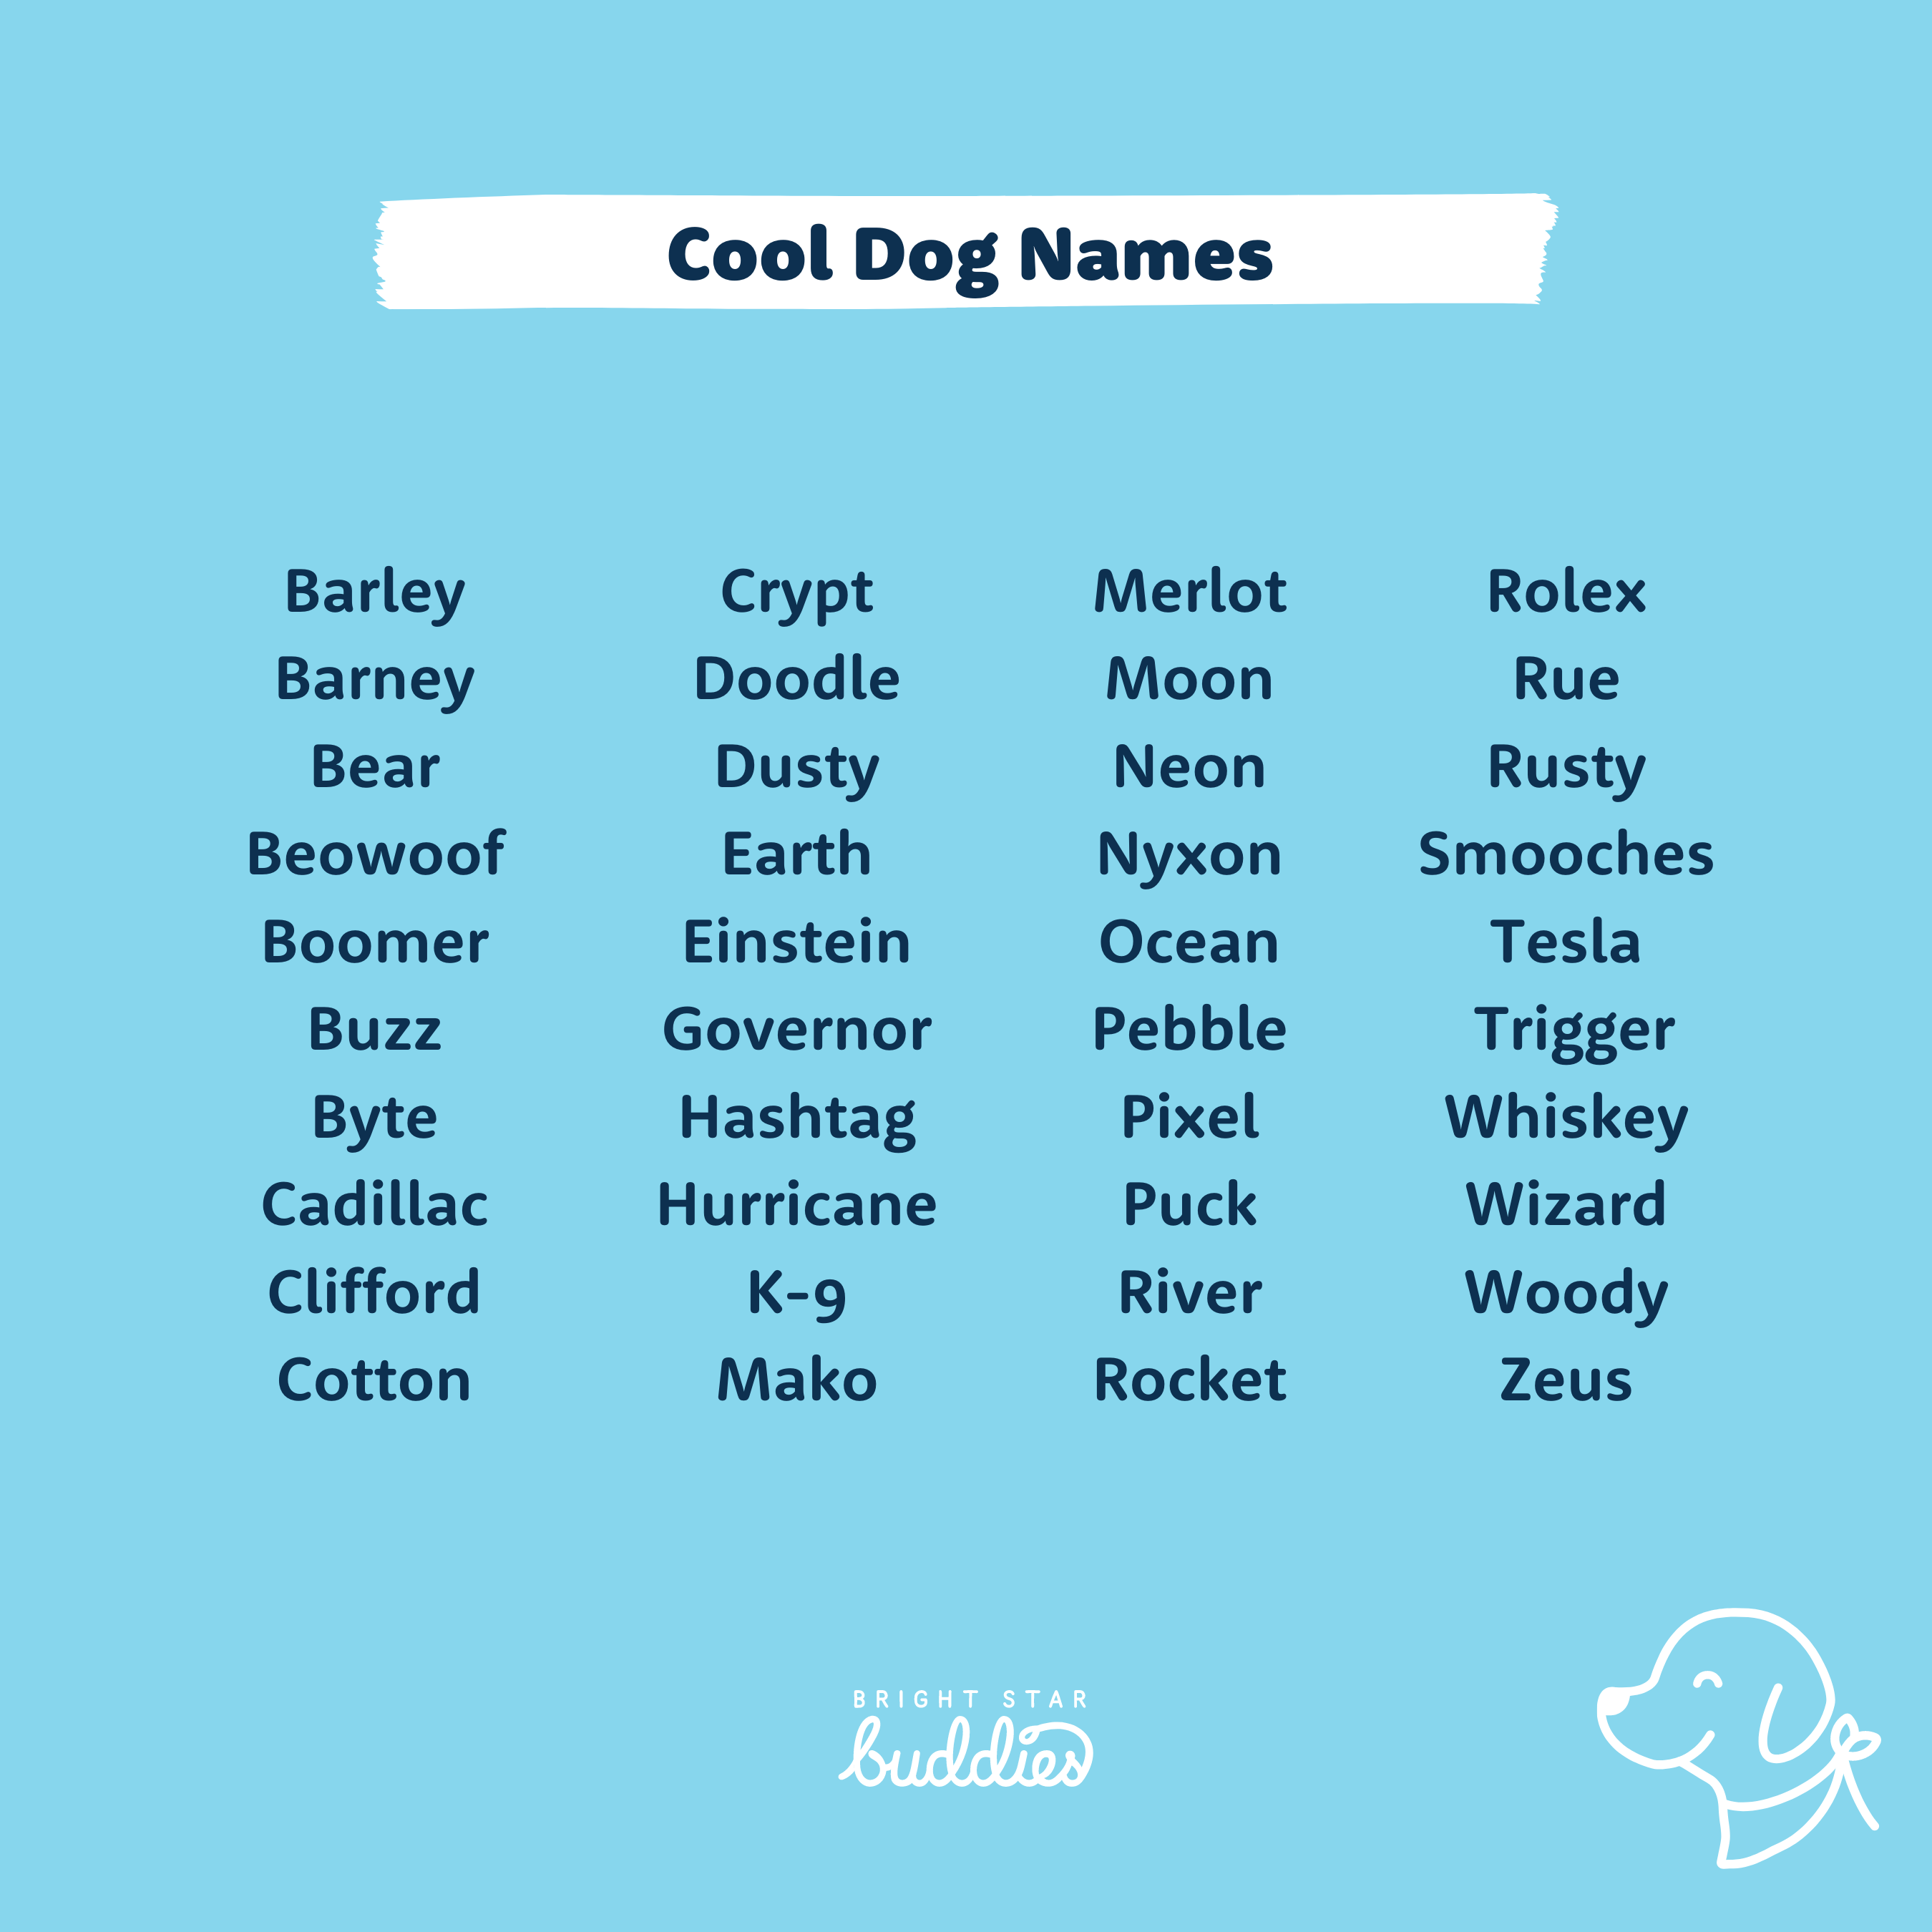 Cute Dog Names